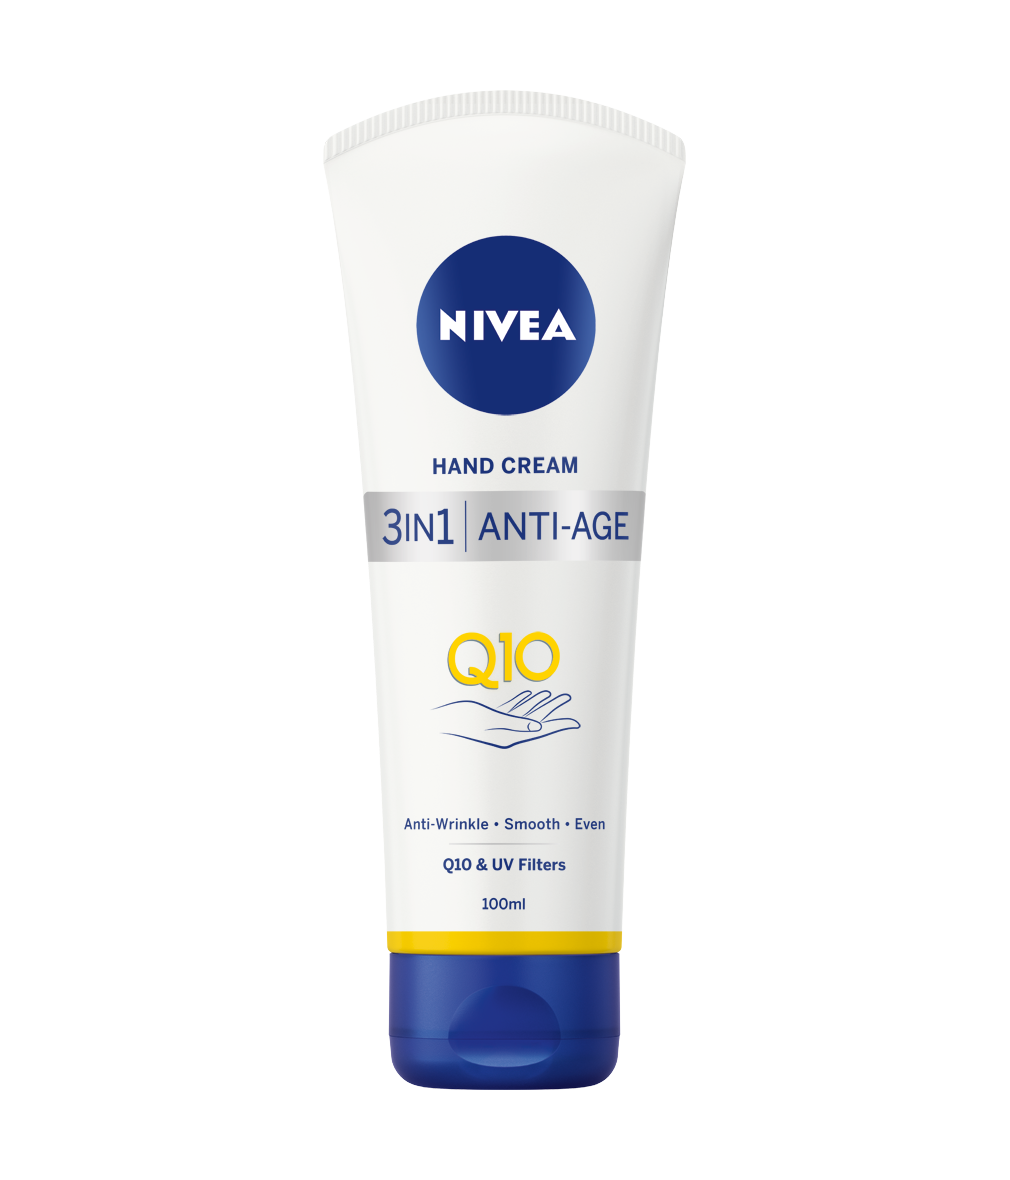 Nivea's Q10 Anti-age cream